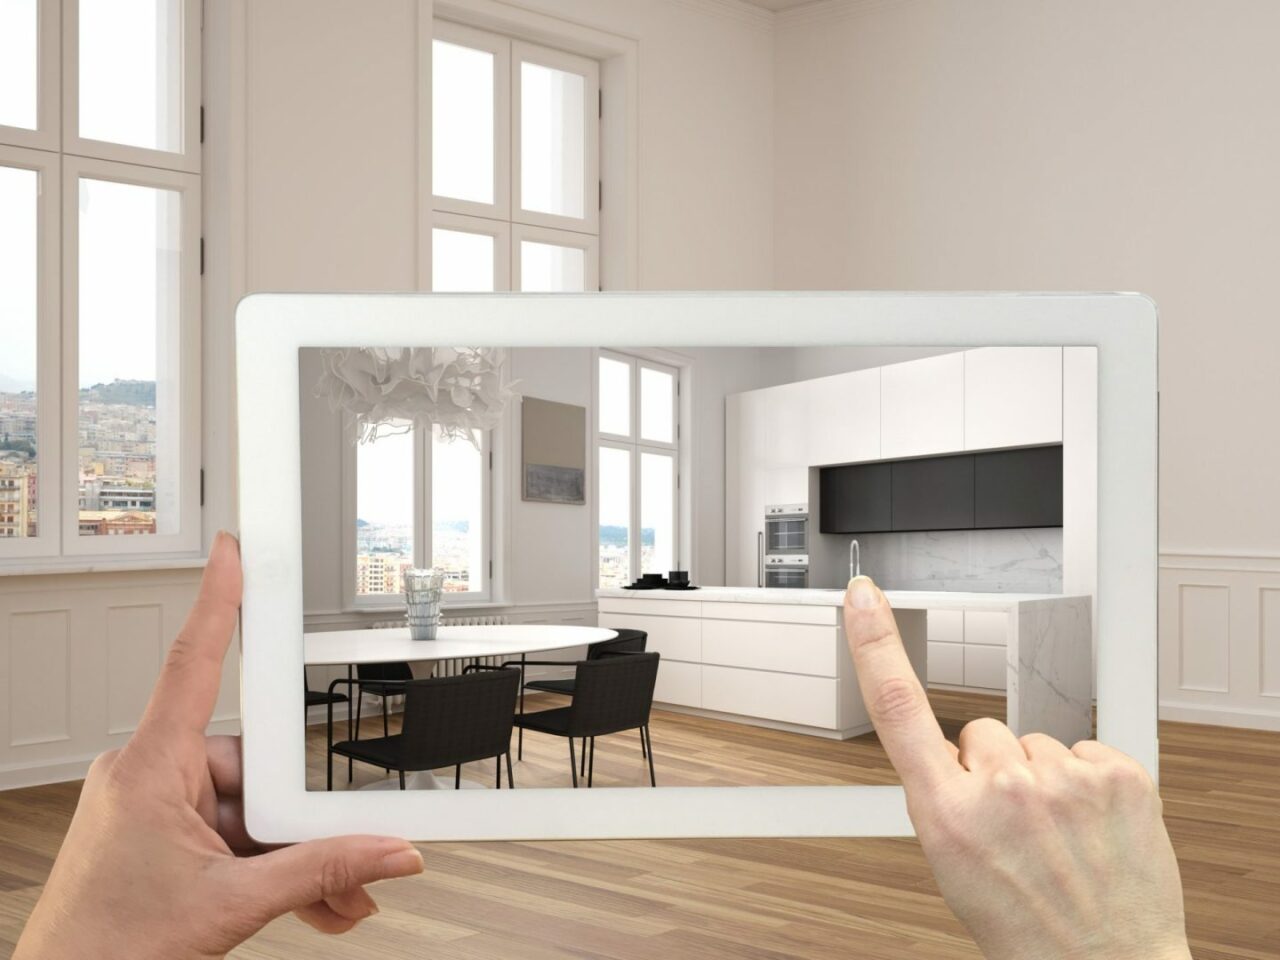 Konzept der Augmented Reality. Eine Hand hält ein Tablet mit einer AR-Anwendung, um Möbel und Designprodukte in einem leeren Interieur mit Parkettboden und einer weißen Küche mit Esstisch zu simulieren.